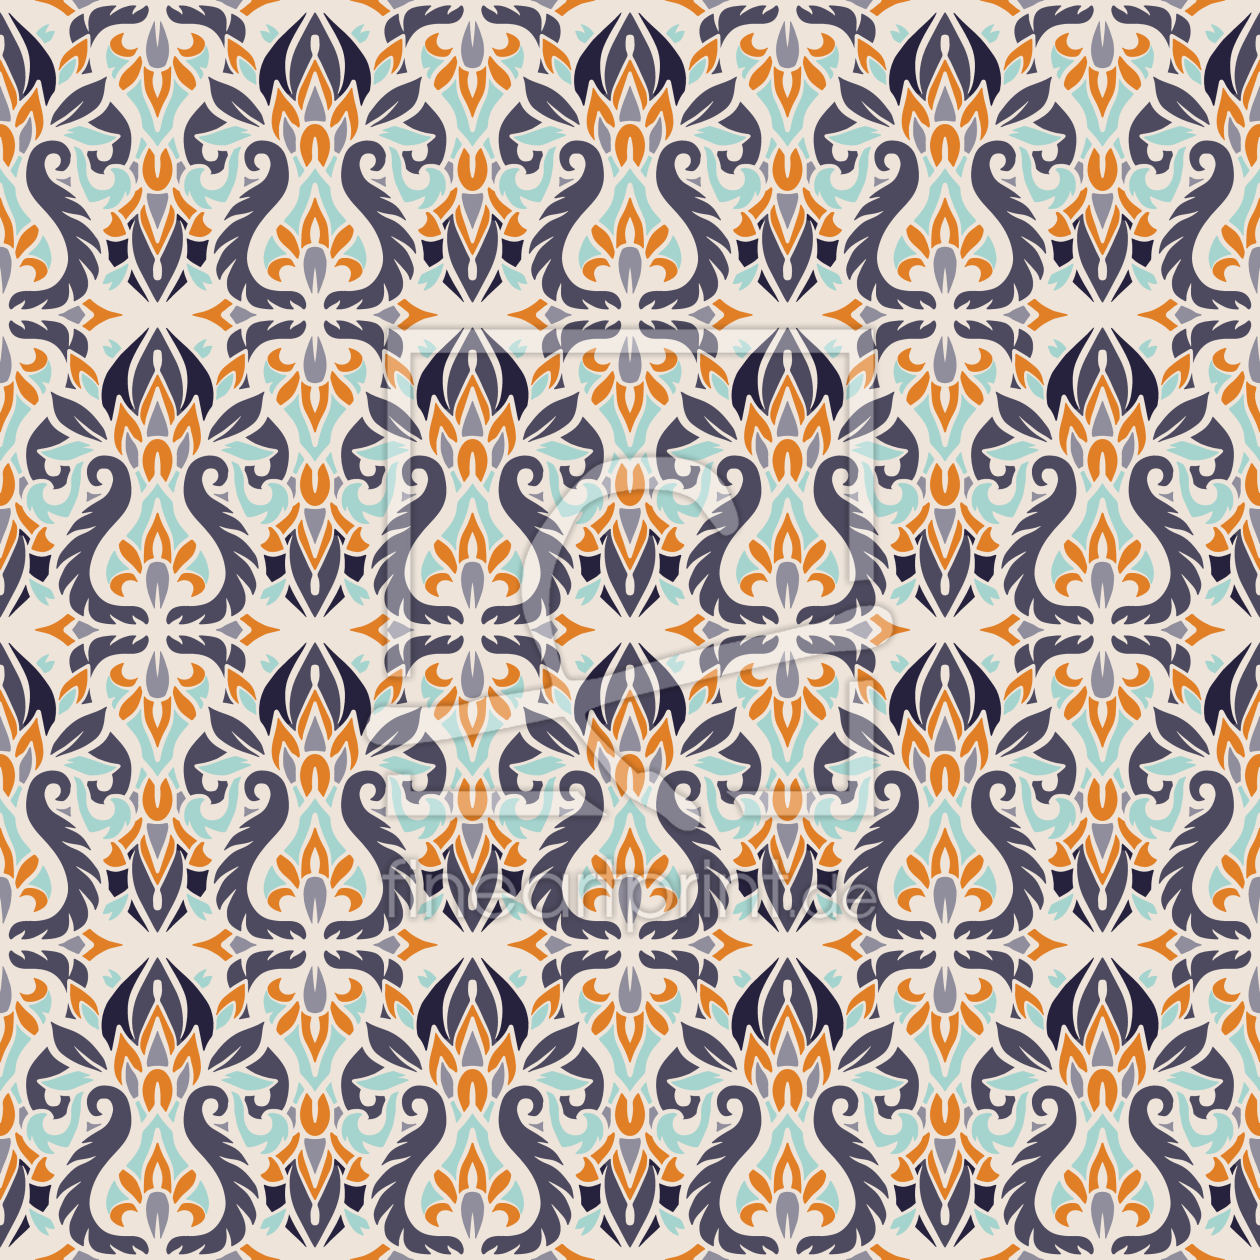 Bild-Nr.: 9013697 Retro Blumenverzierungen erstellt von patterndesigns-com